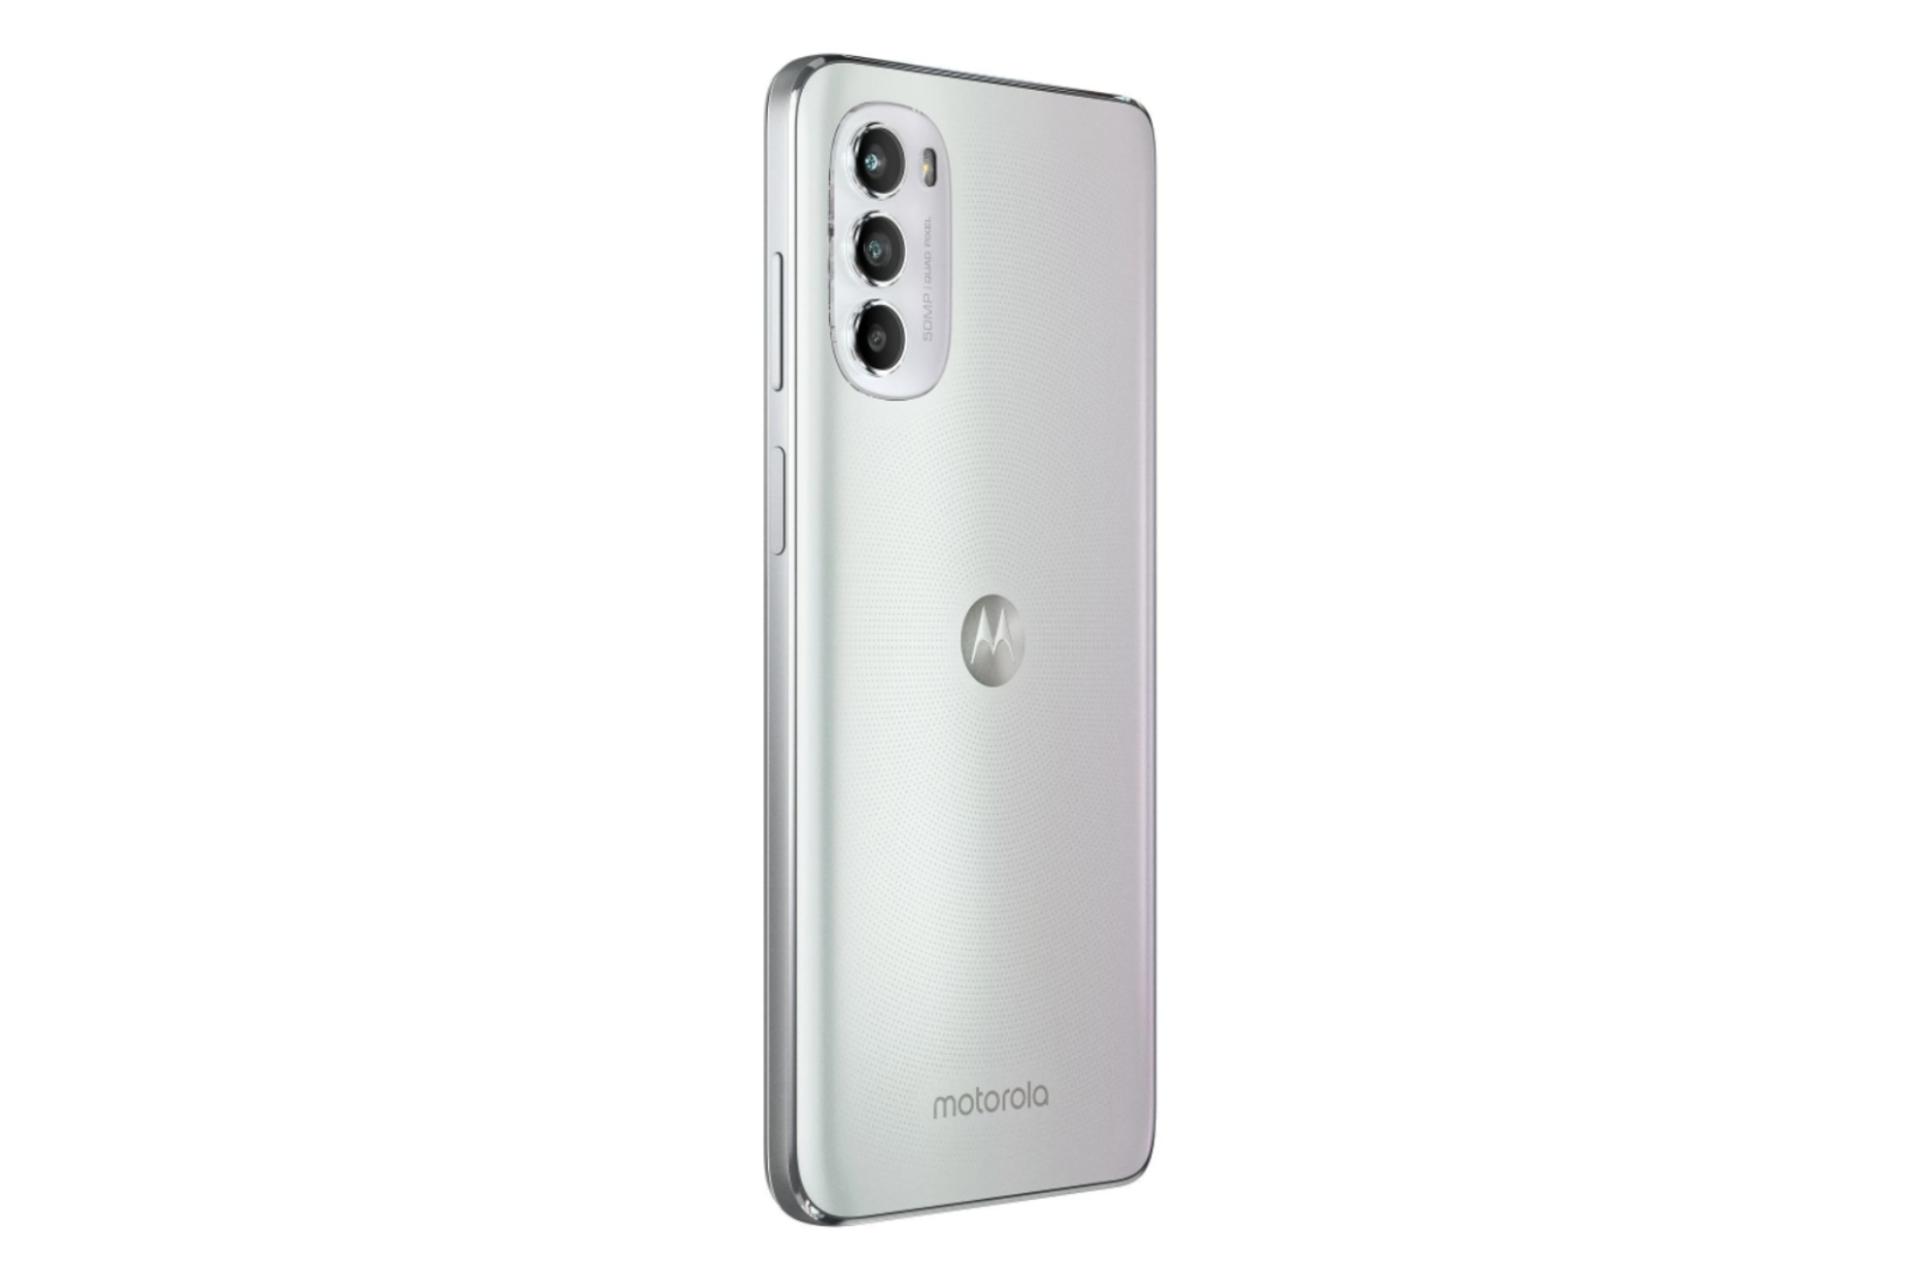 نمای جانبی گوشی موبایل موتو G82 موتورولا / Motorola Moto G82 سفید